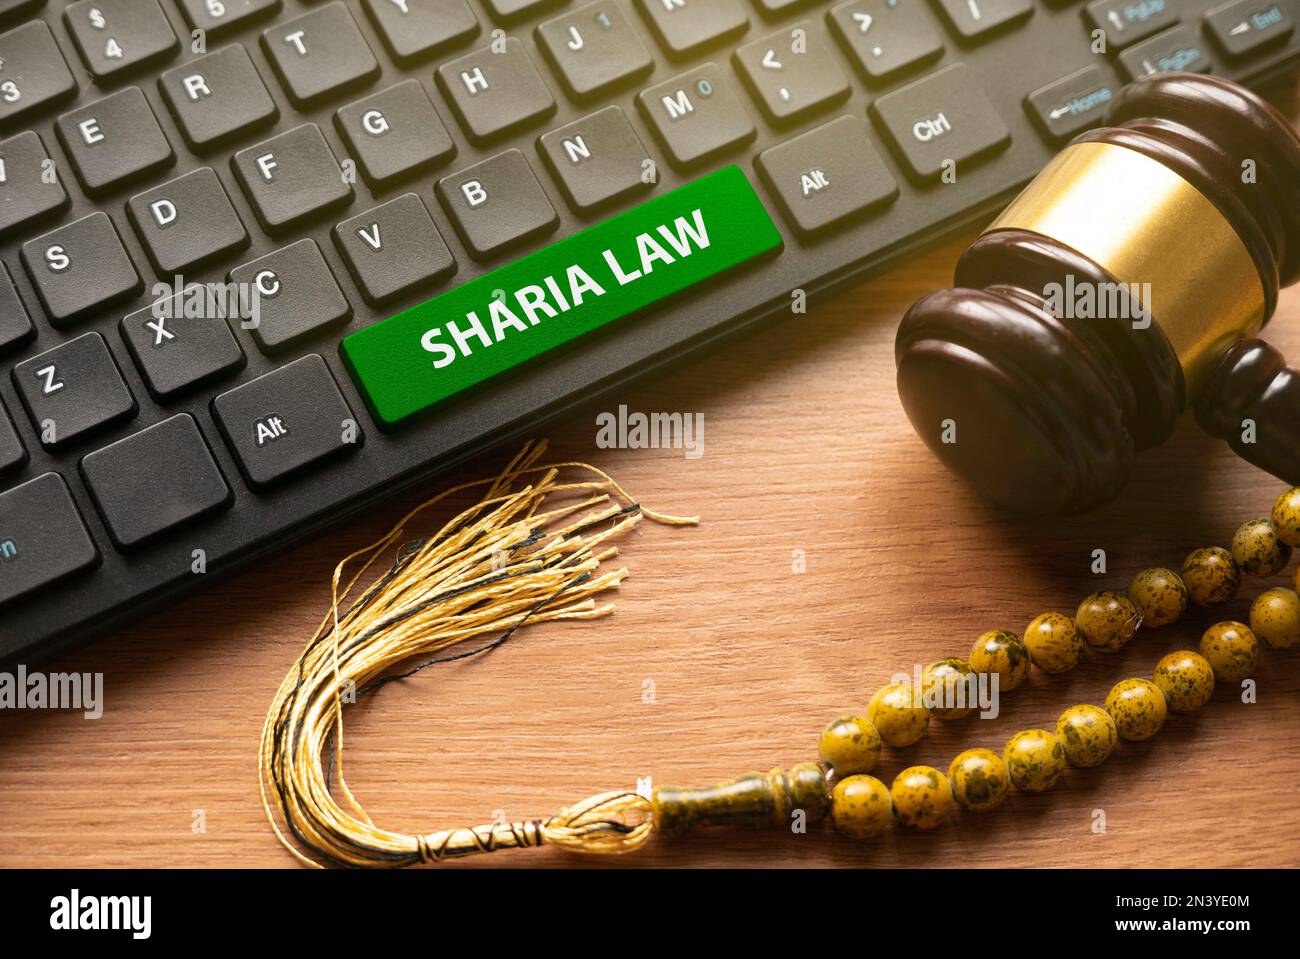 Mazo, cuentas de rosario y teclado de computadora escrito con Sharia Law. Foto de stock